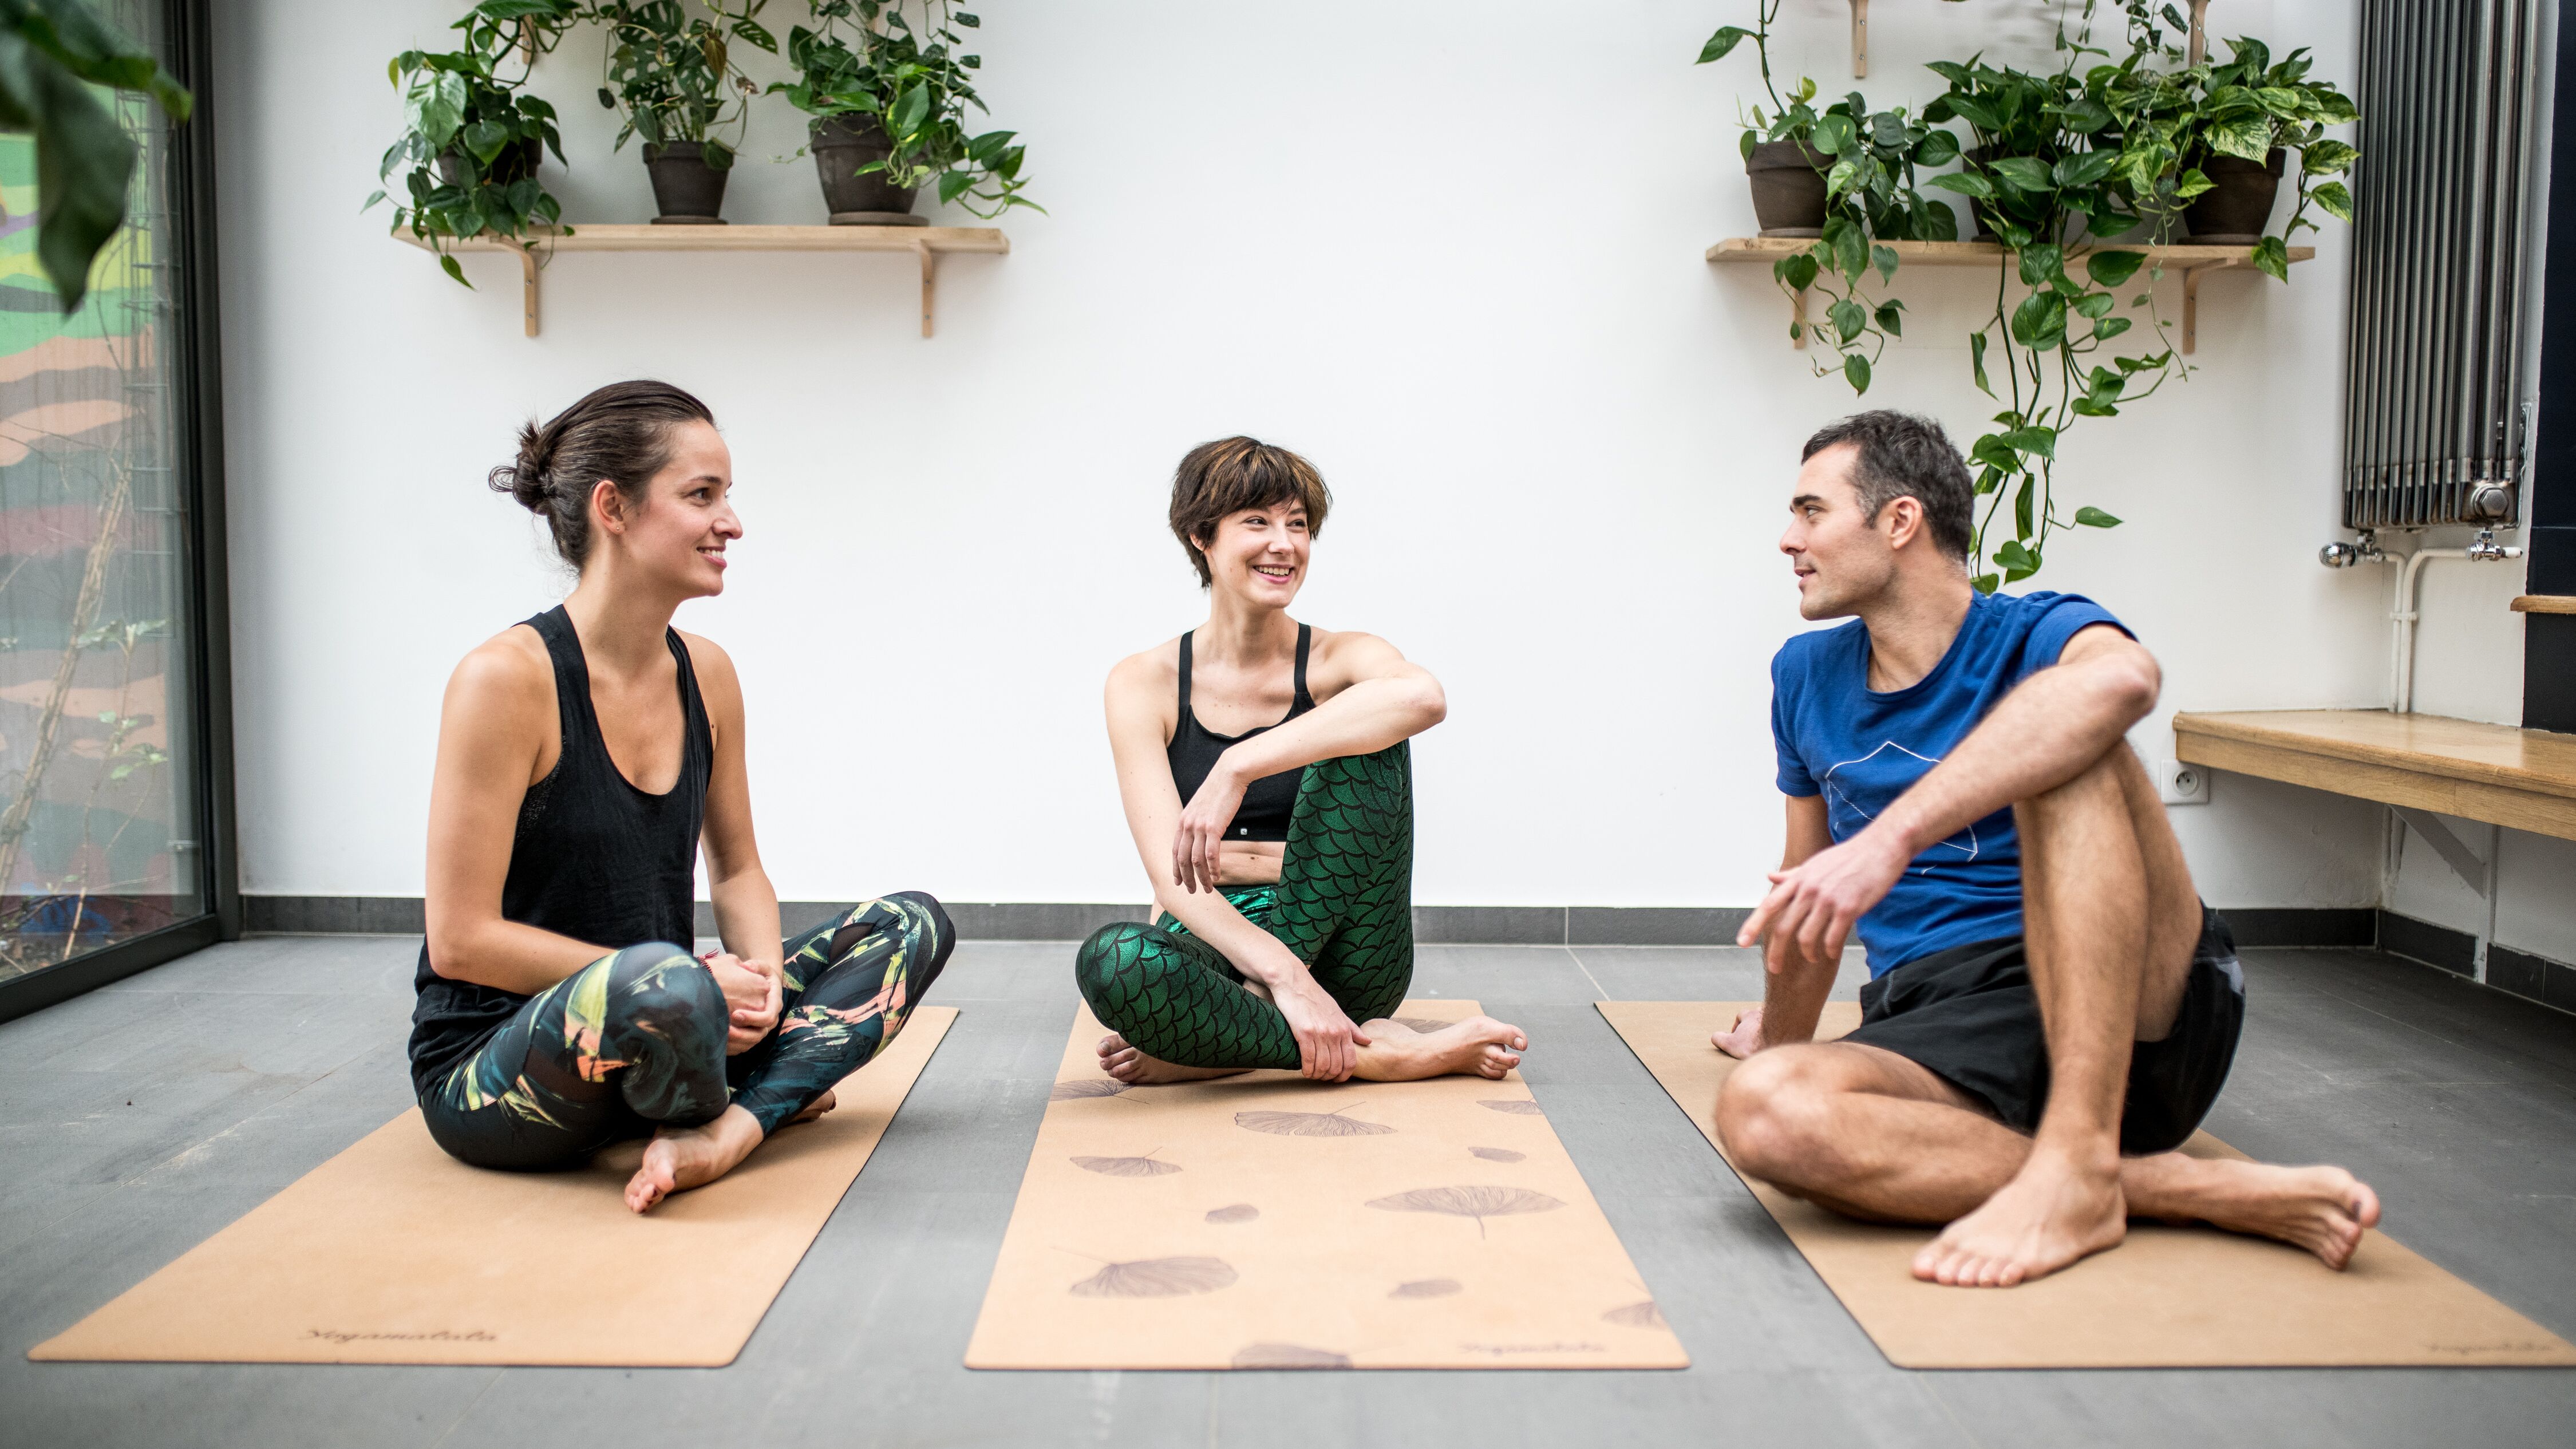 Comment choisir son stage de yoga ? Conseils avant de partir en séjour de yoga. #yoga #retreat #stagedeyoga